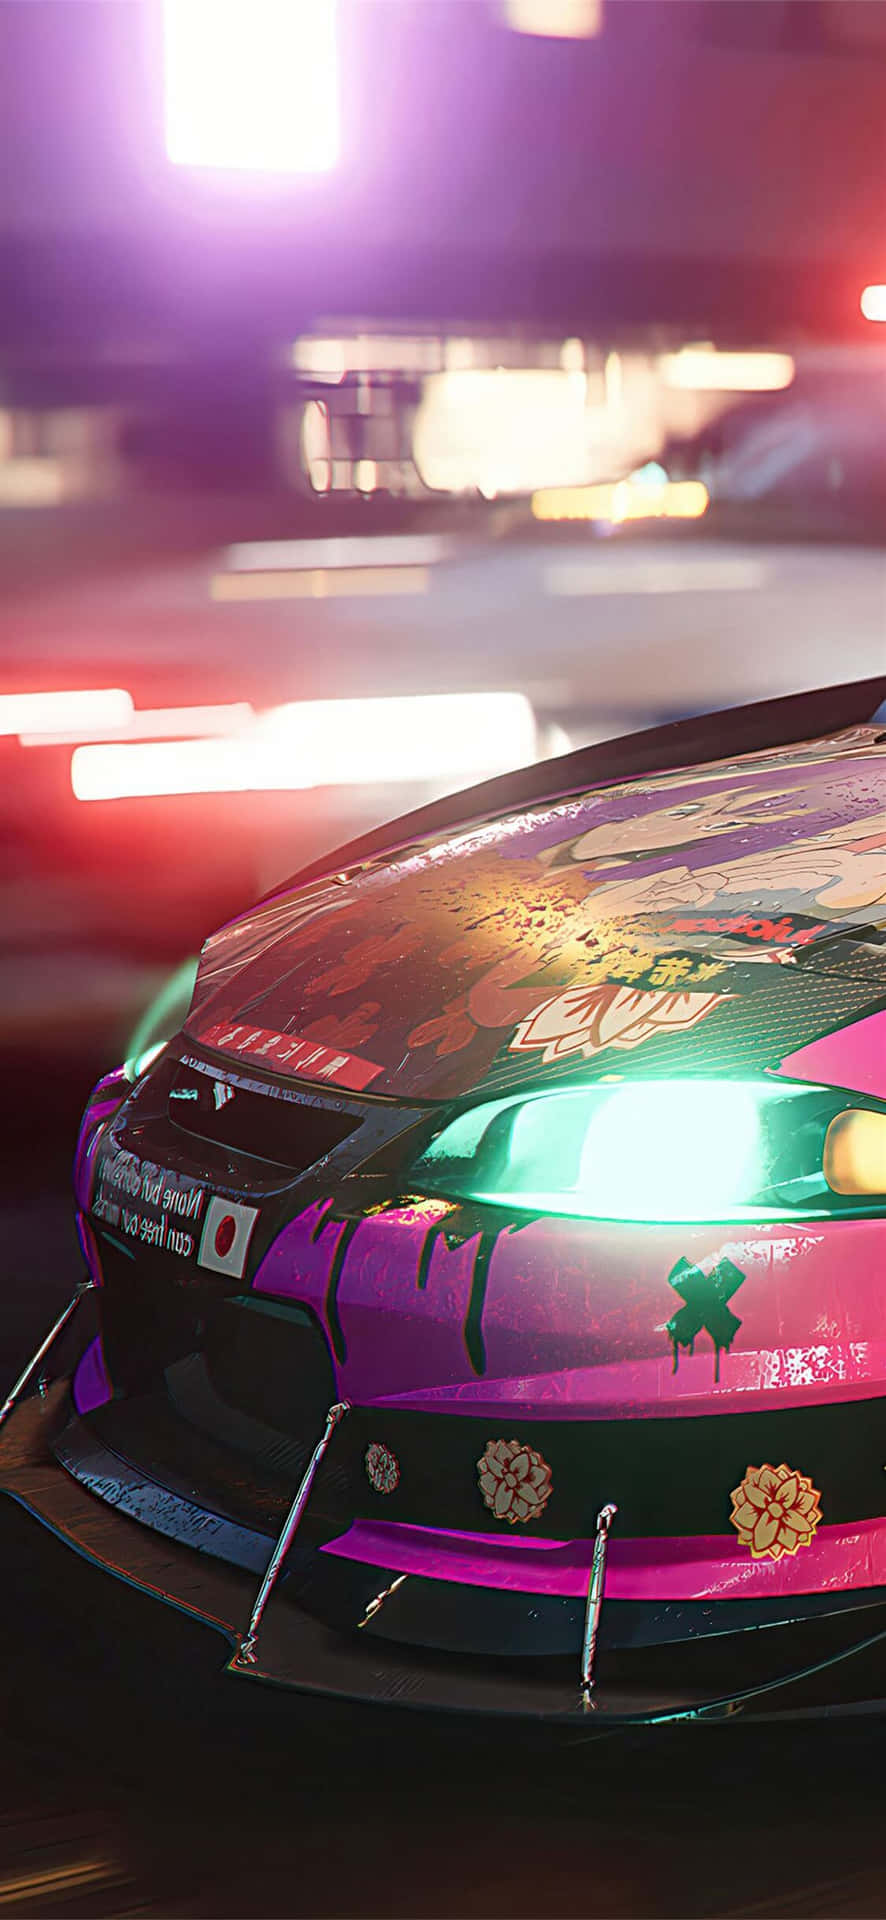 Iphonexs Bakgrundsbild Med Need For Speed Payback Och Lila Graffiti-målade Bilen.